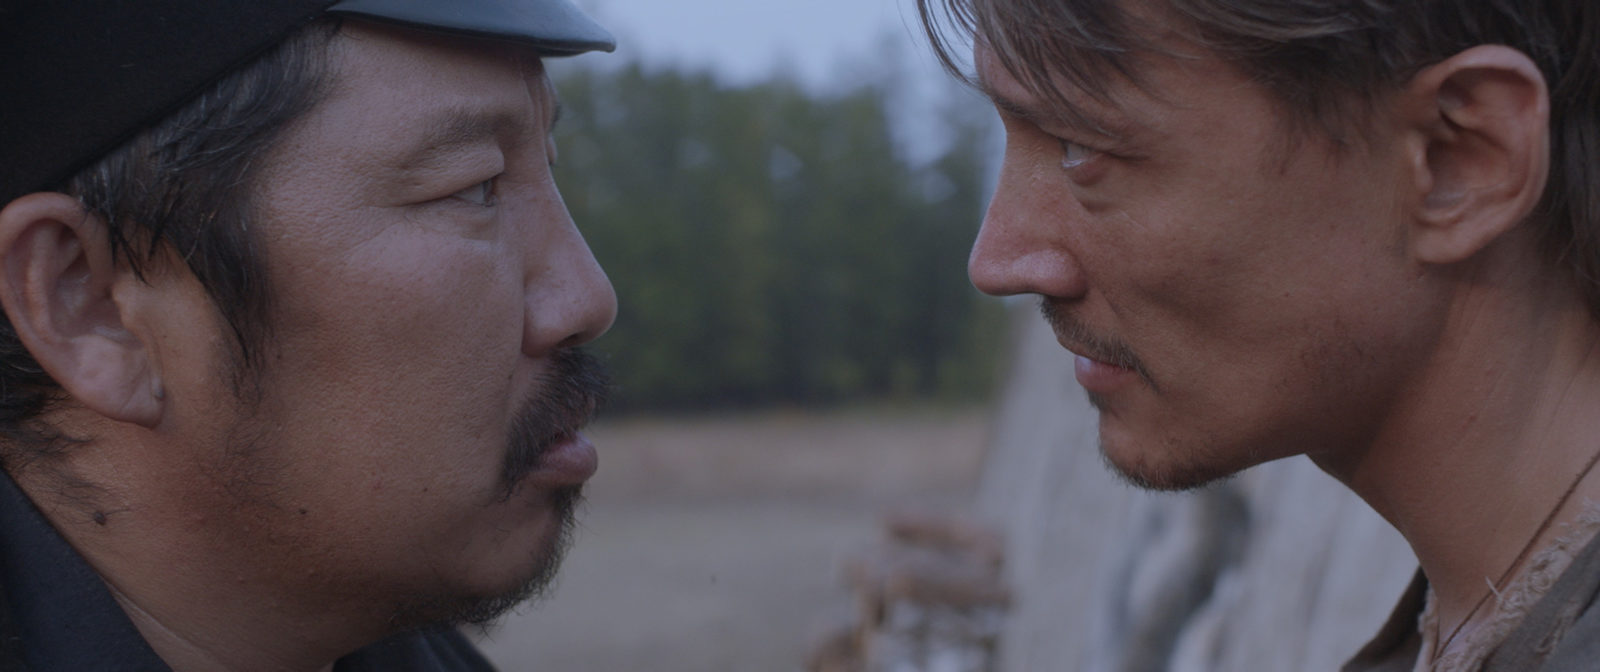 Мировая премьера якутского фильма «Нуучча» состоится на кинофестивале в Карловых Варах